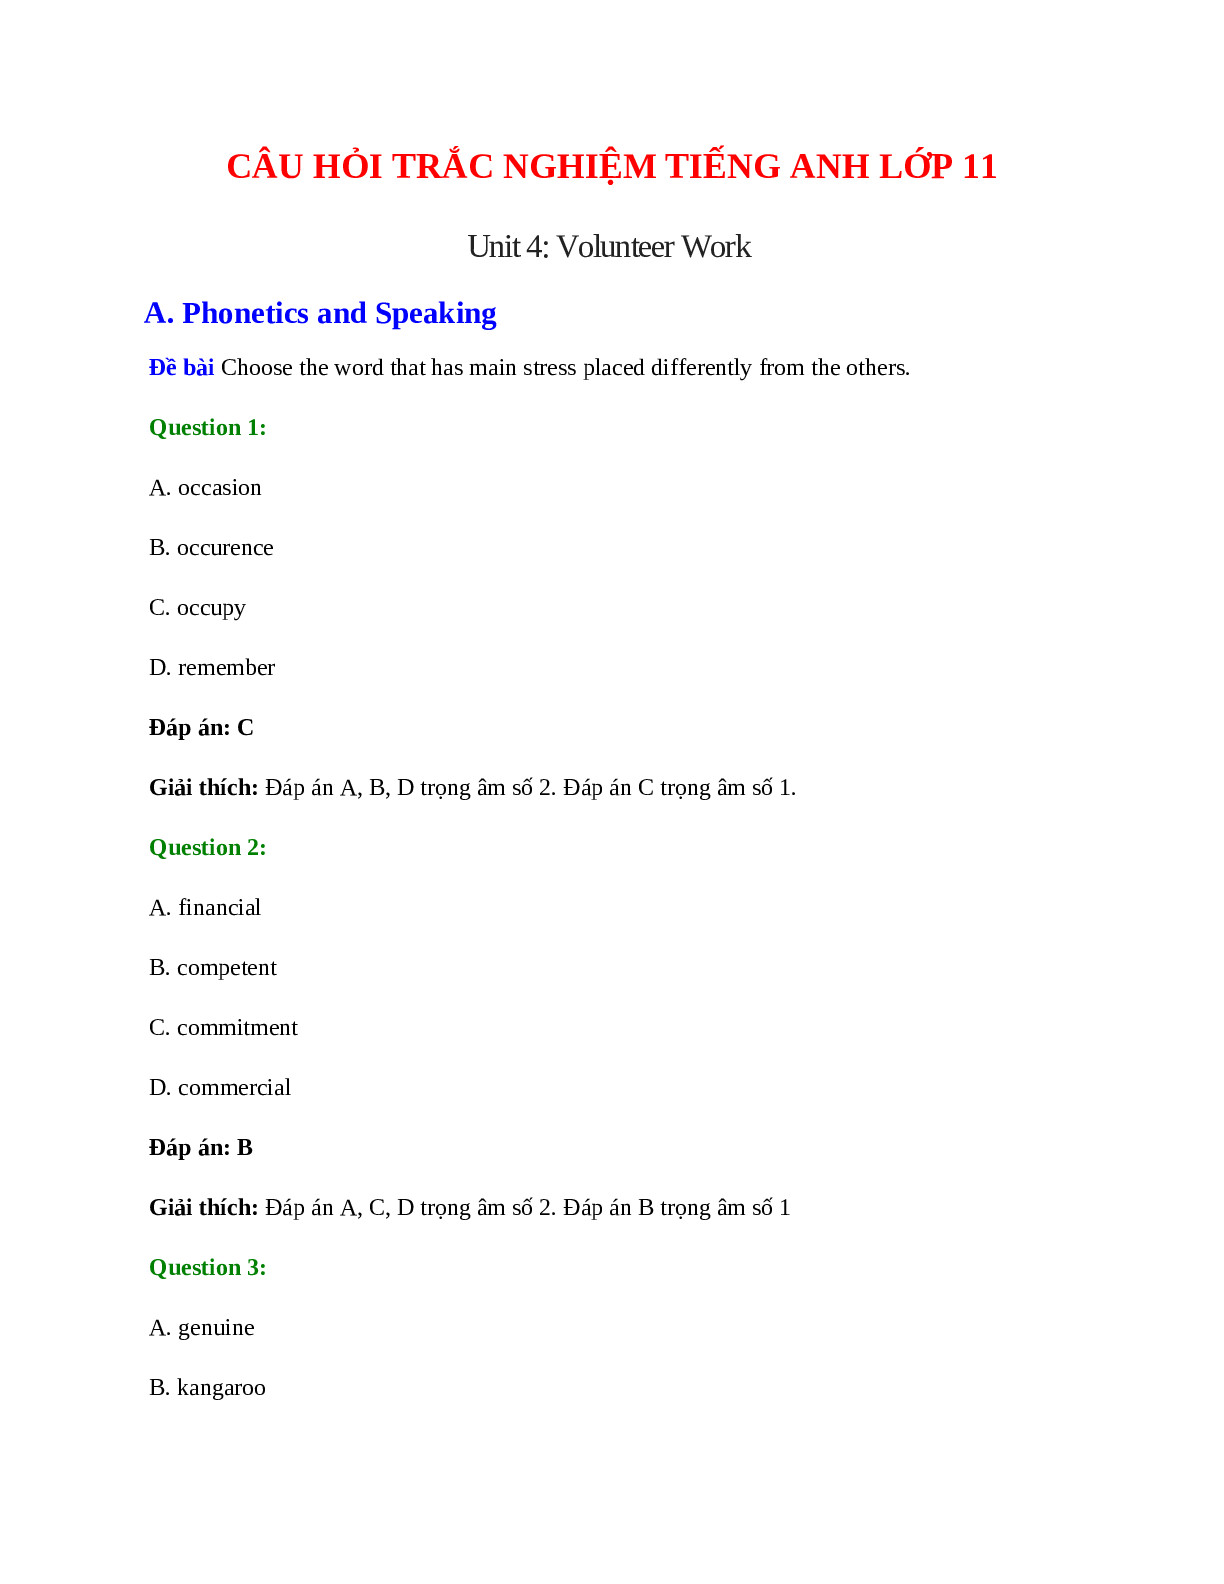 60 câu Trắc nghiệm Tiếng Anh 11 Unit 4 có đáp án 2023: Volunteer Work (trang 1)